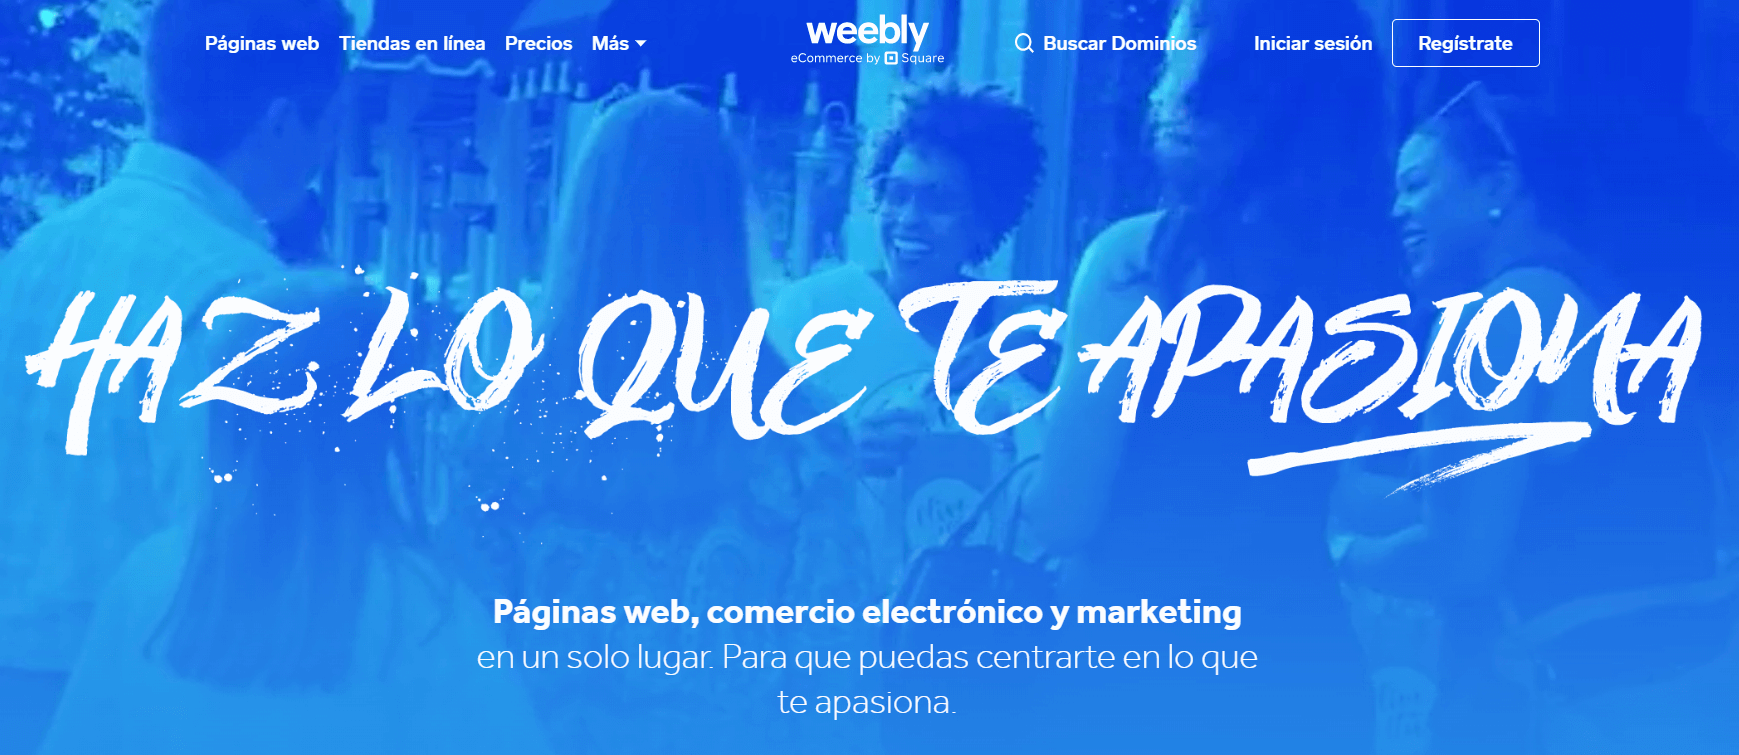 weebly homepage es